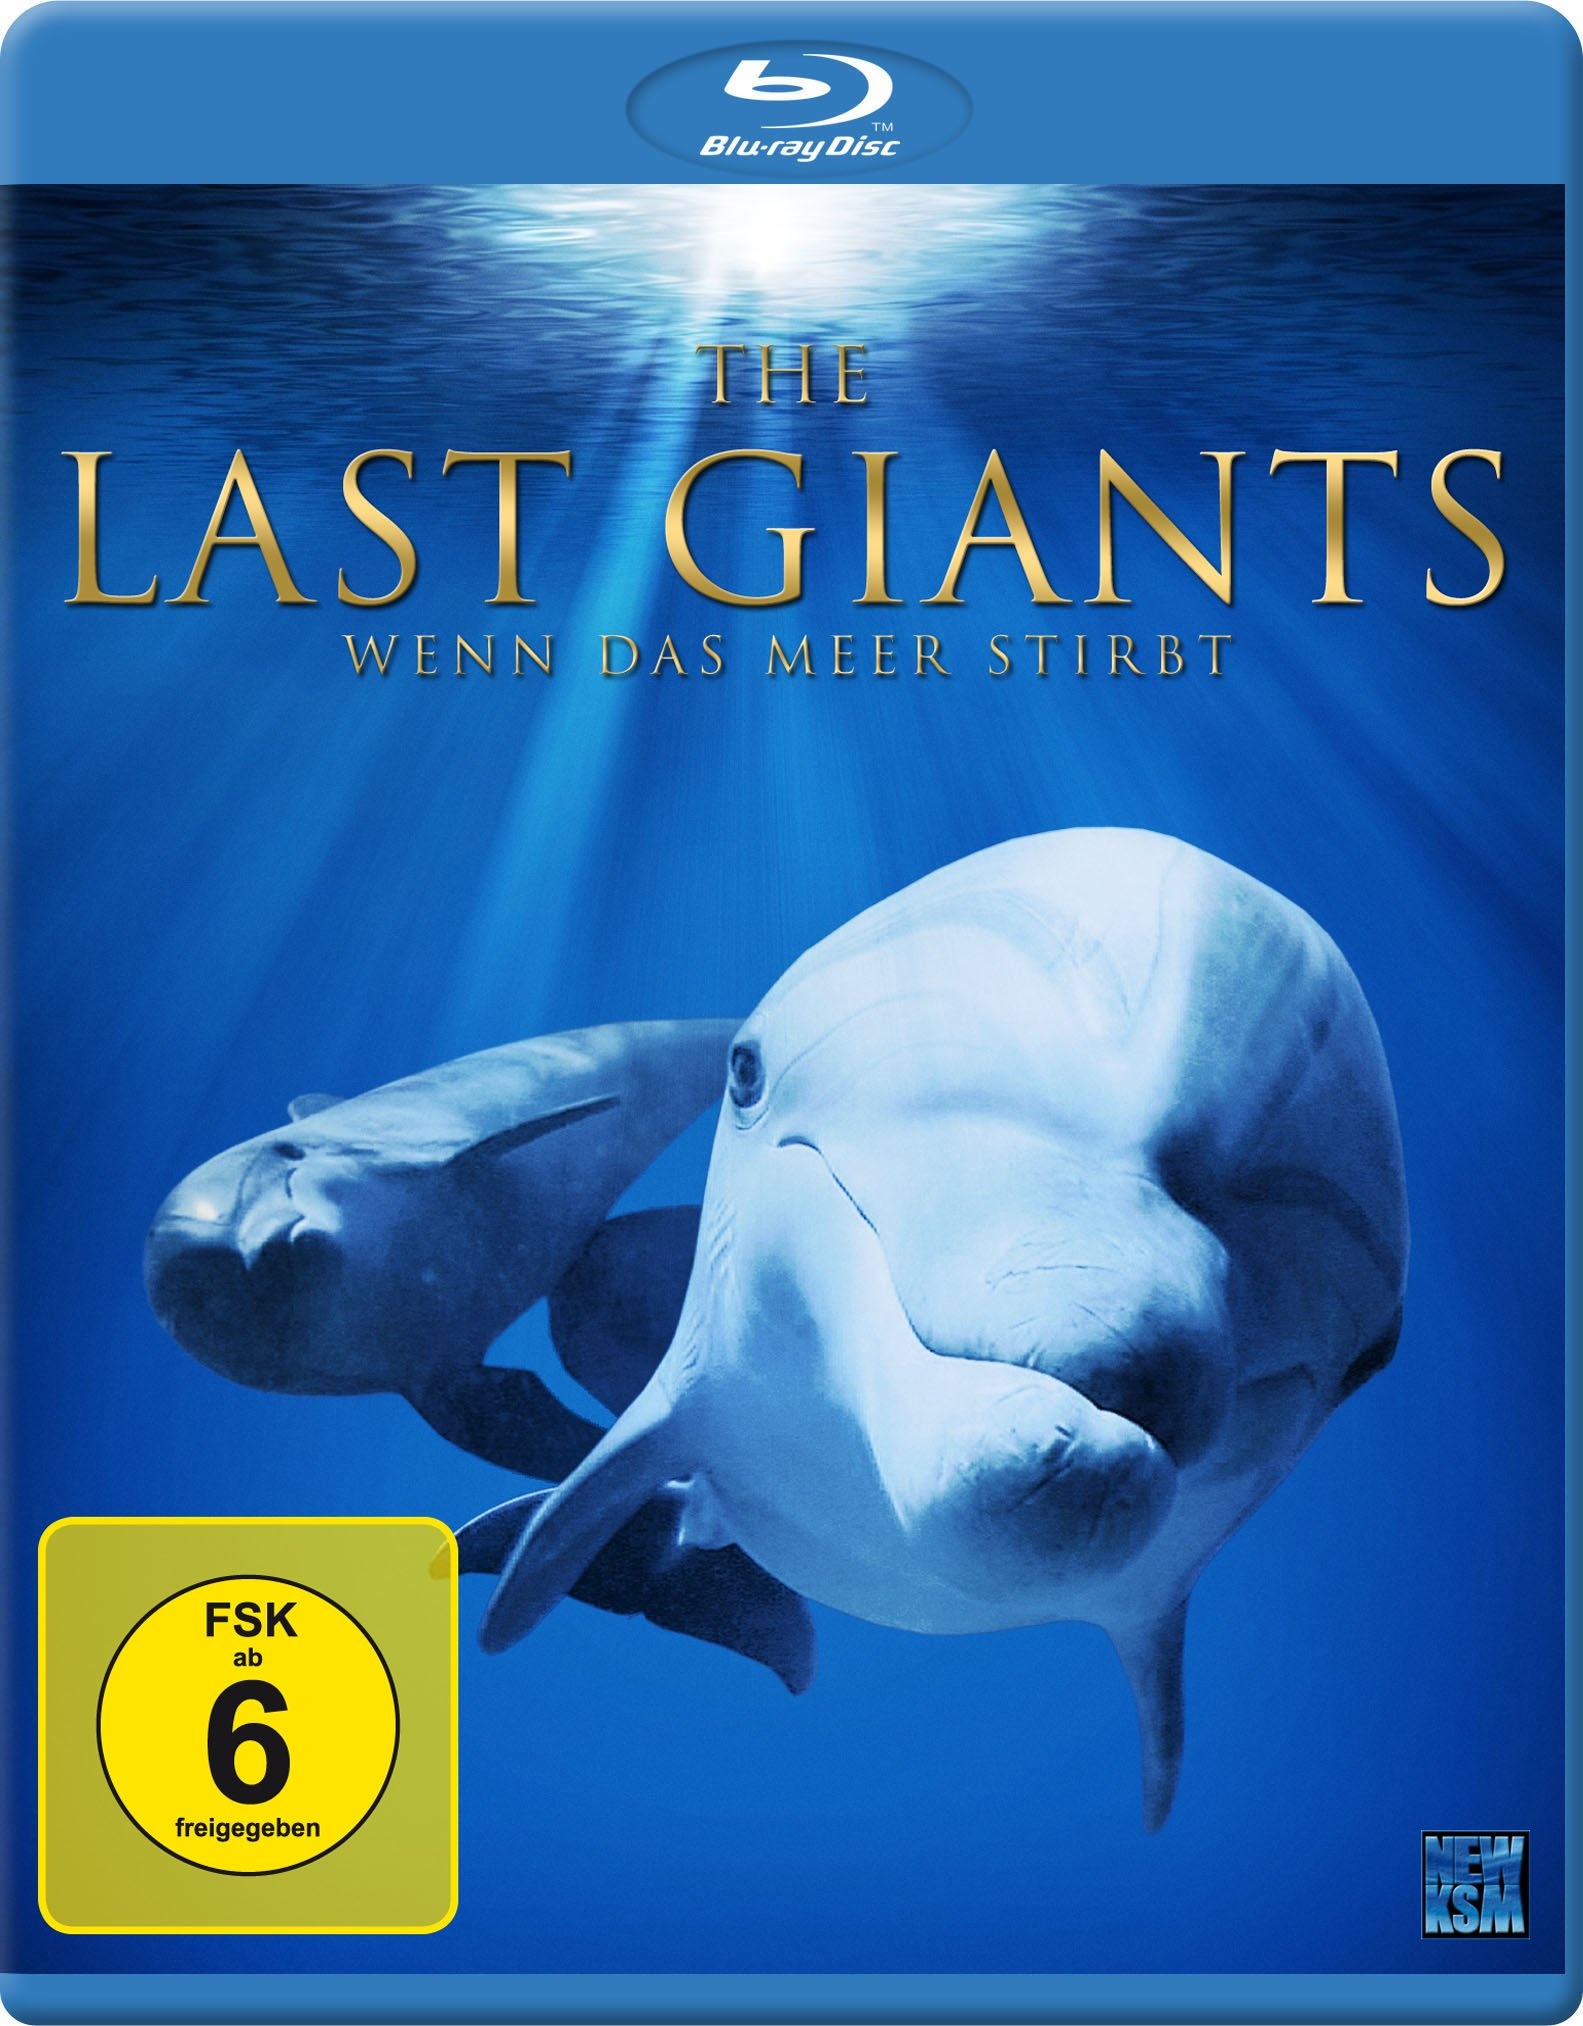 The Last Giants - Wenn das Meer stirbt [Blu-ray] (Neu differenzbesteuert)